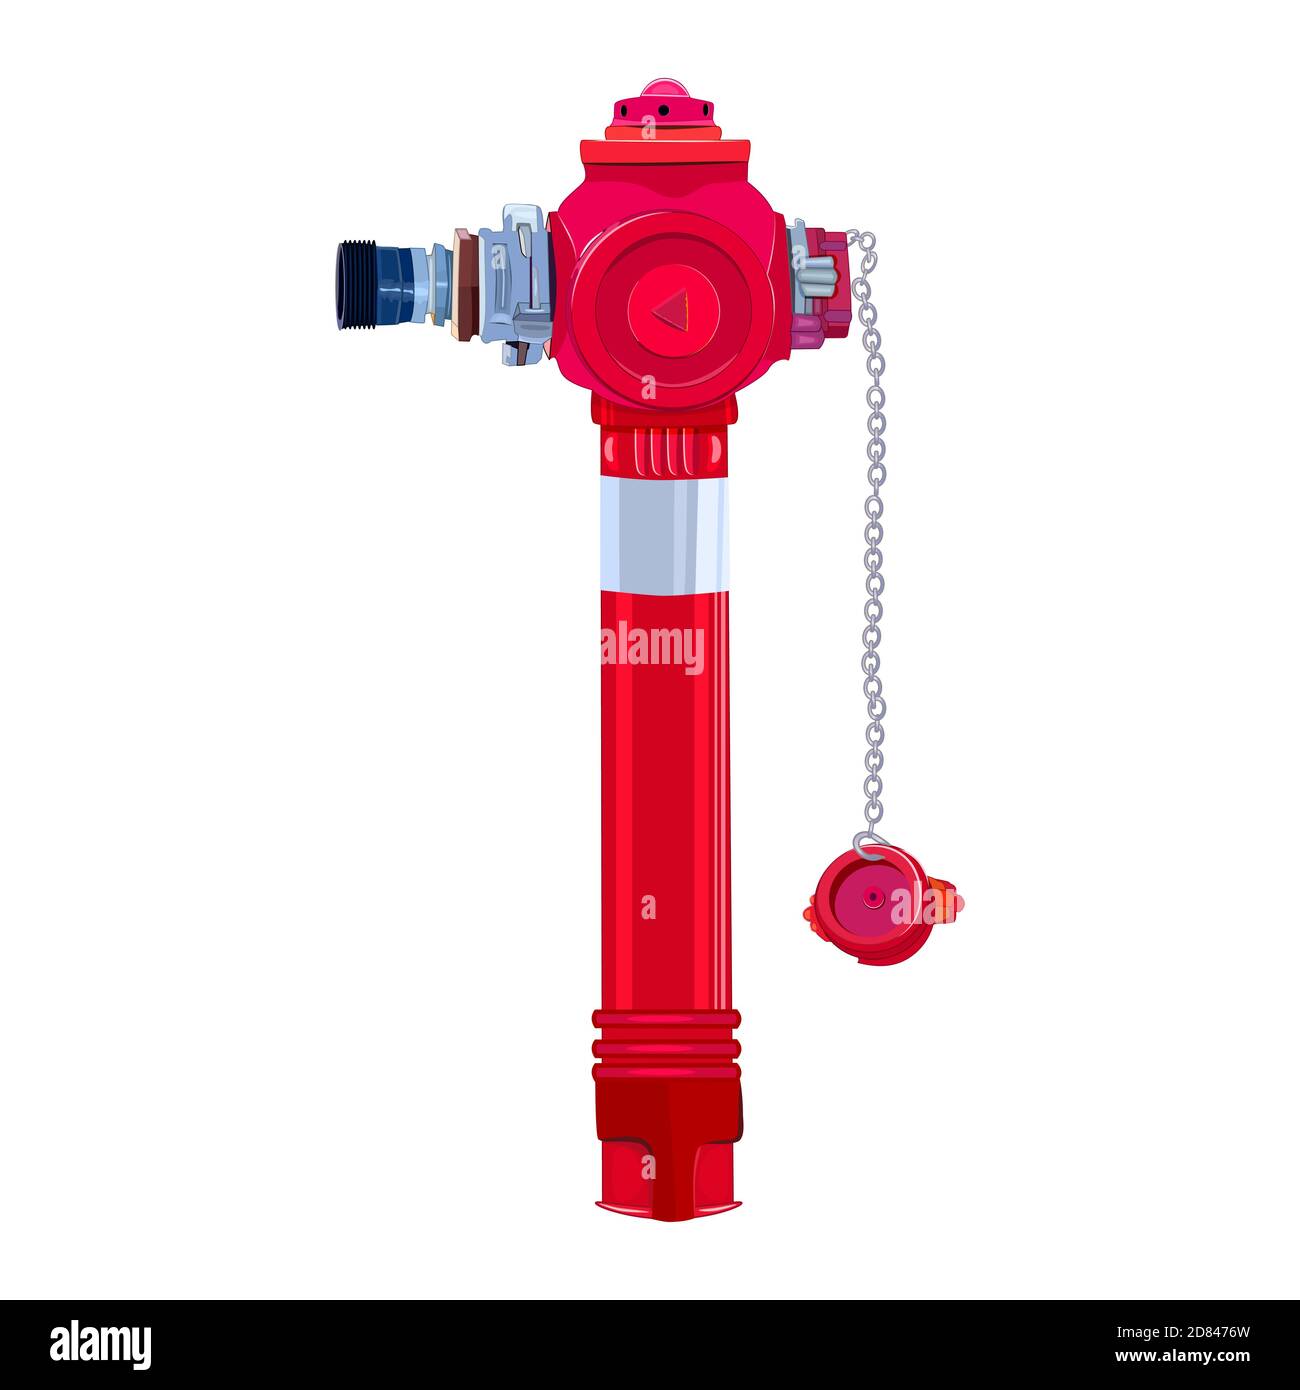 Roter Hydrant auf weißem Hintergrund isoliert. Rot städtischen Brandschutz, Wasserversorgung System.Firemen Werkzeug für Stadt Feuerwehr Department.Vector Stock Vektor